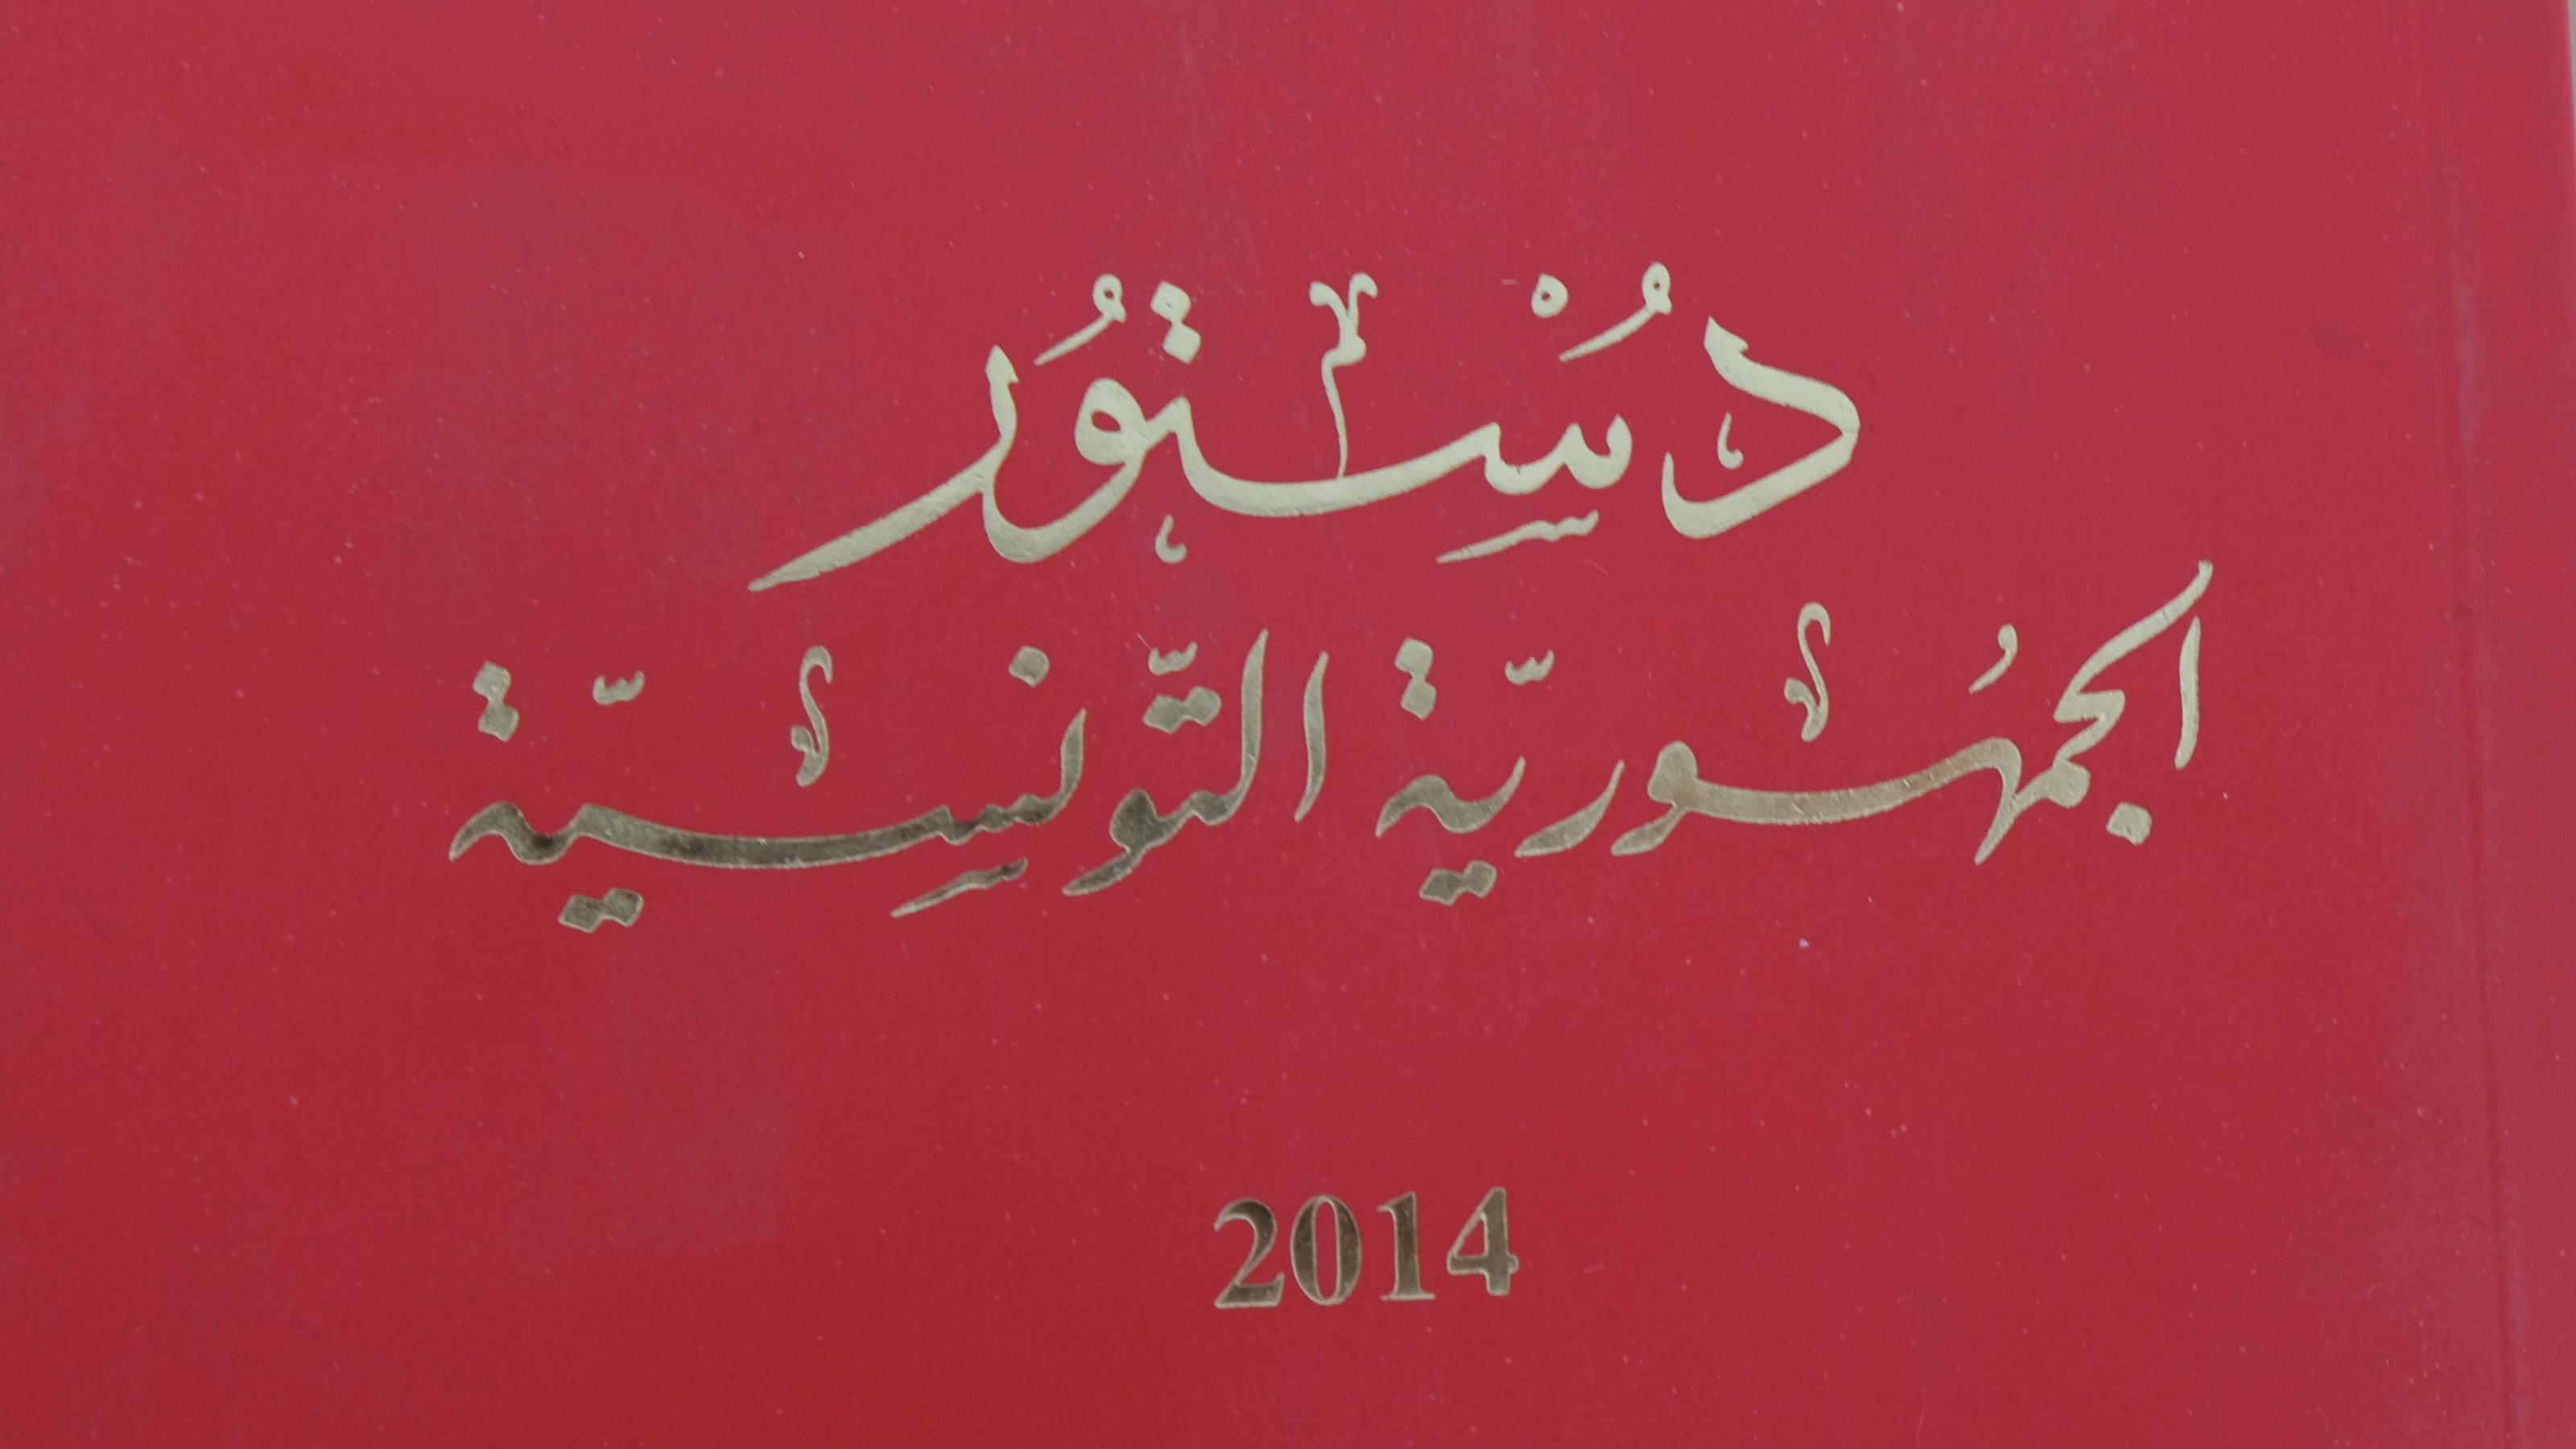 Titel der Sonderausgabe der tunesischen Verfassung von 2014.